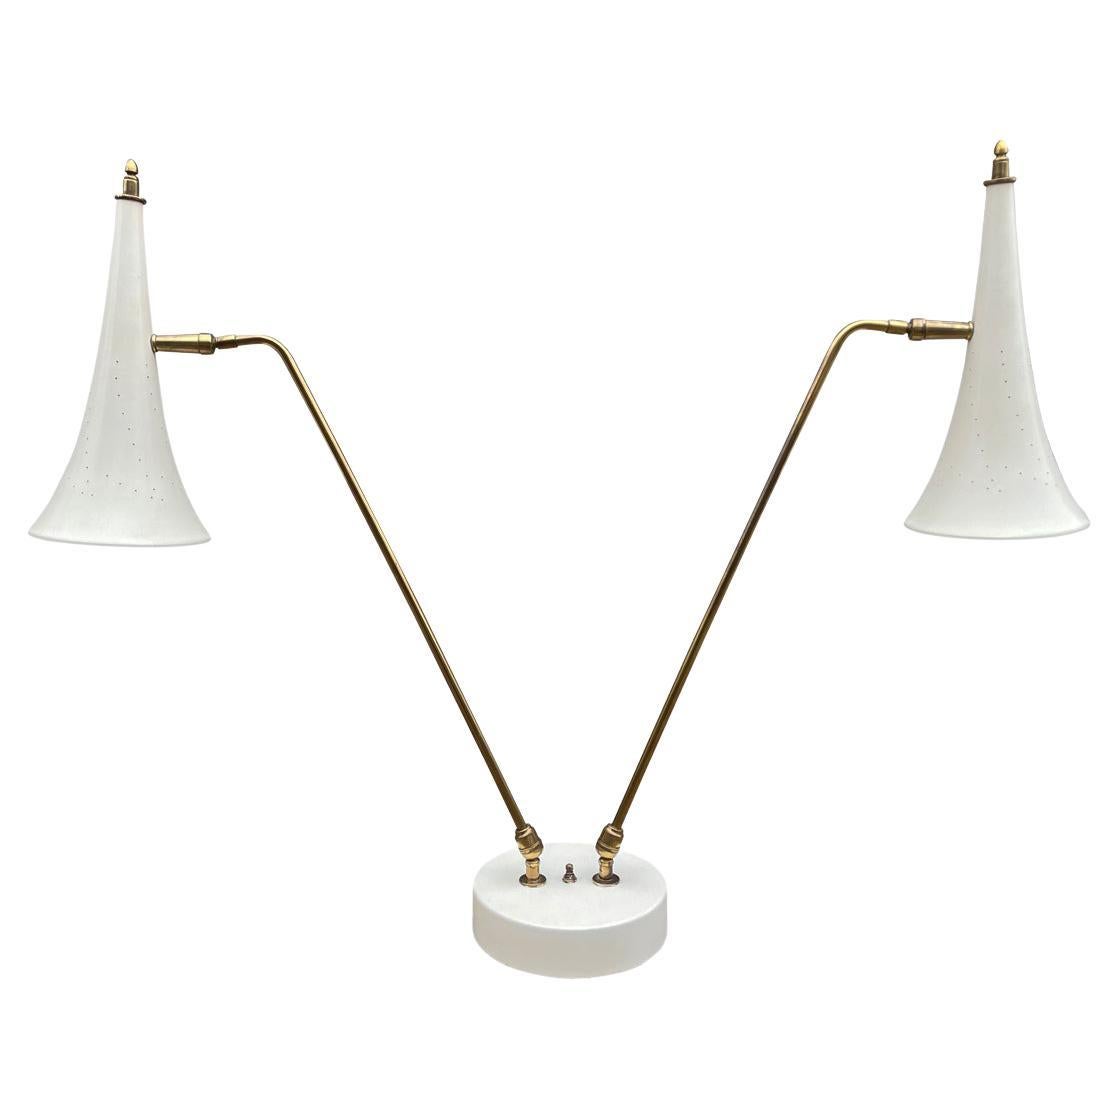 Mid Century Italian Modern Desk Lamp or Table Lamp in White & Brass by Stilnovo